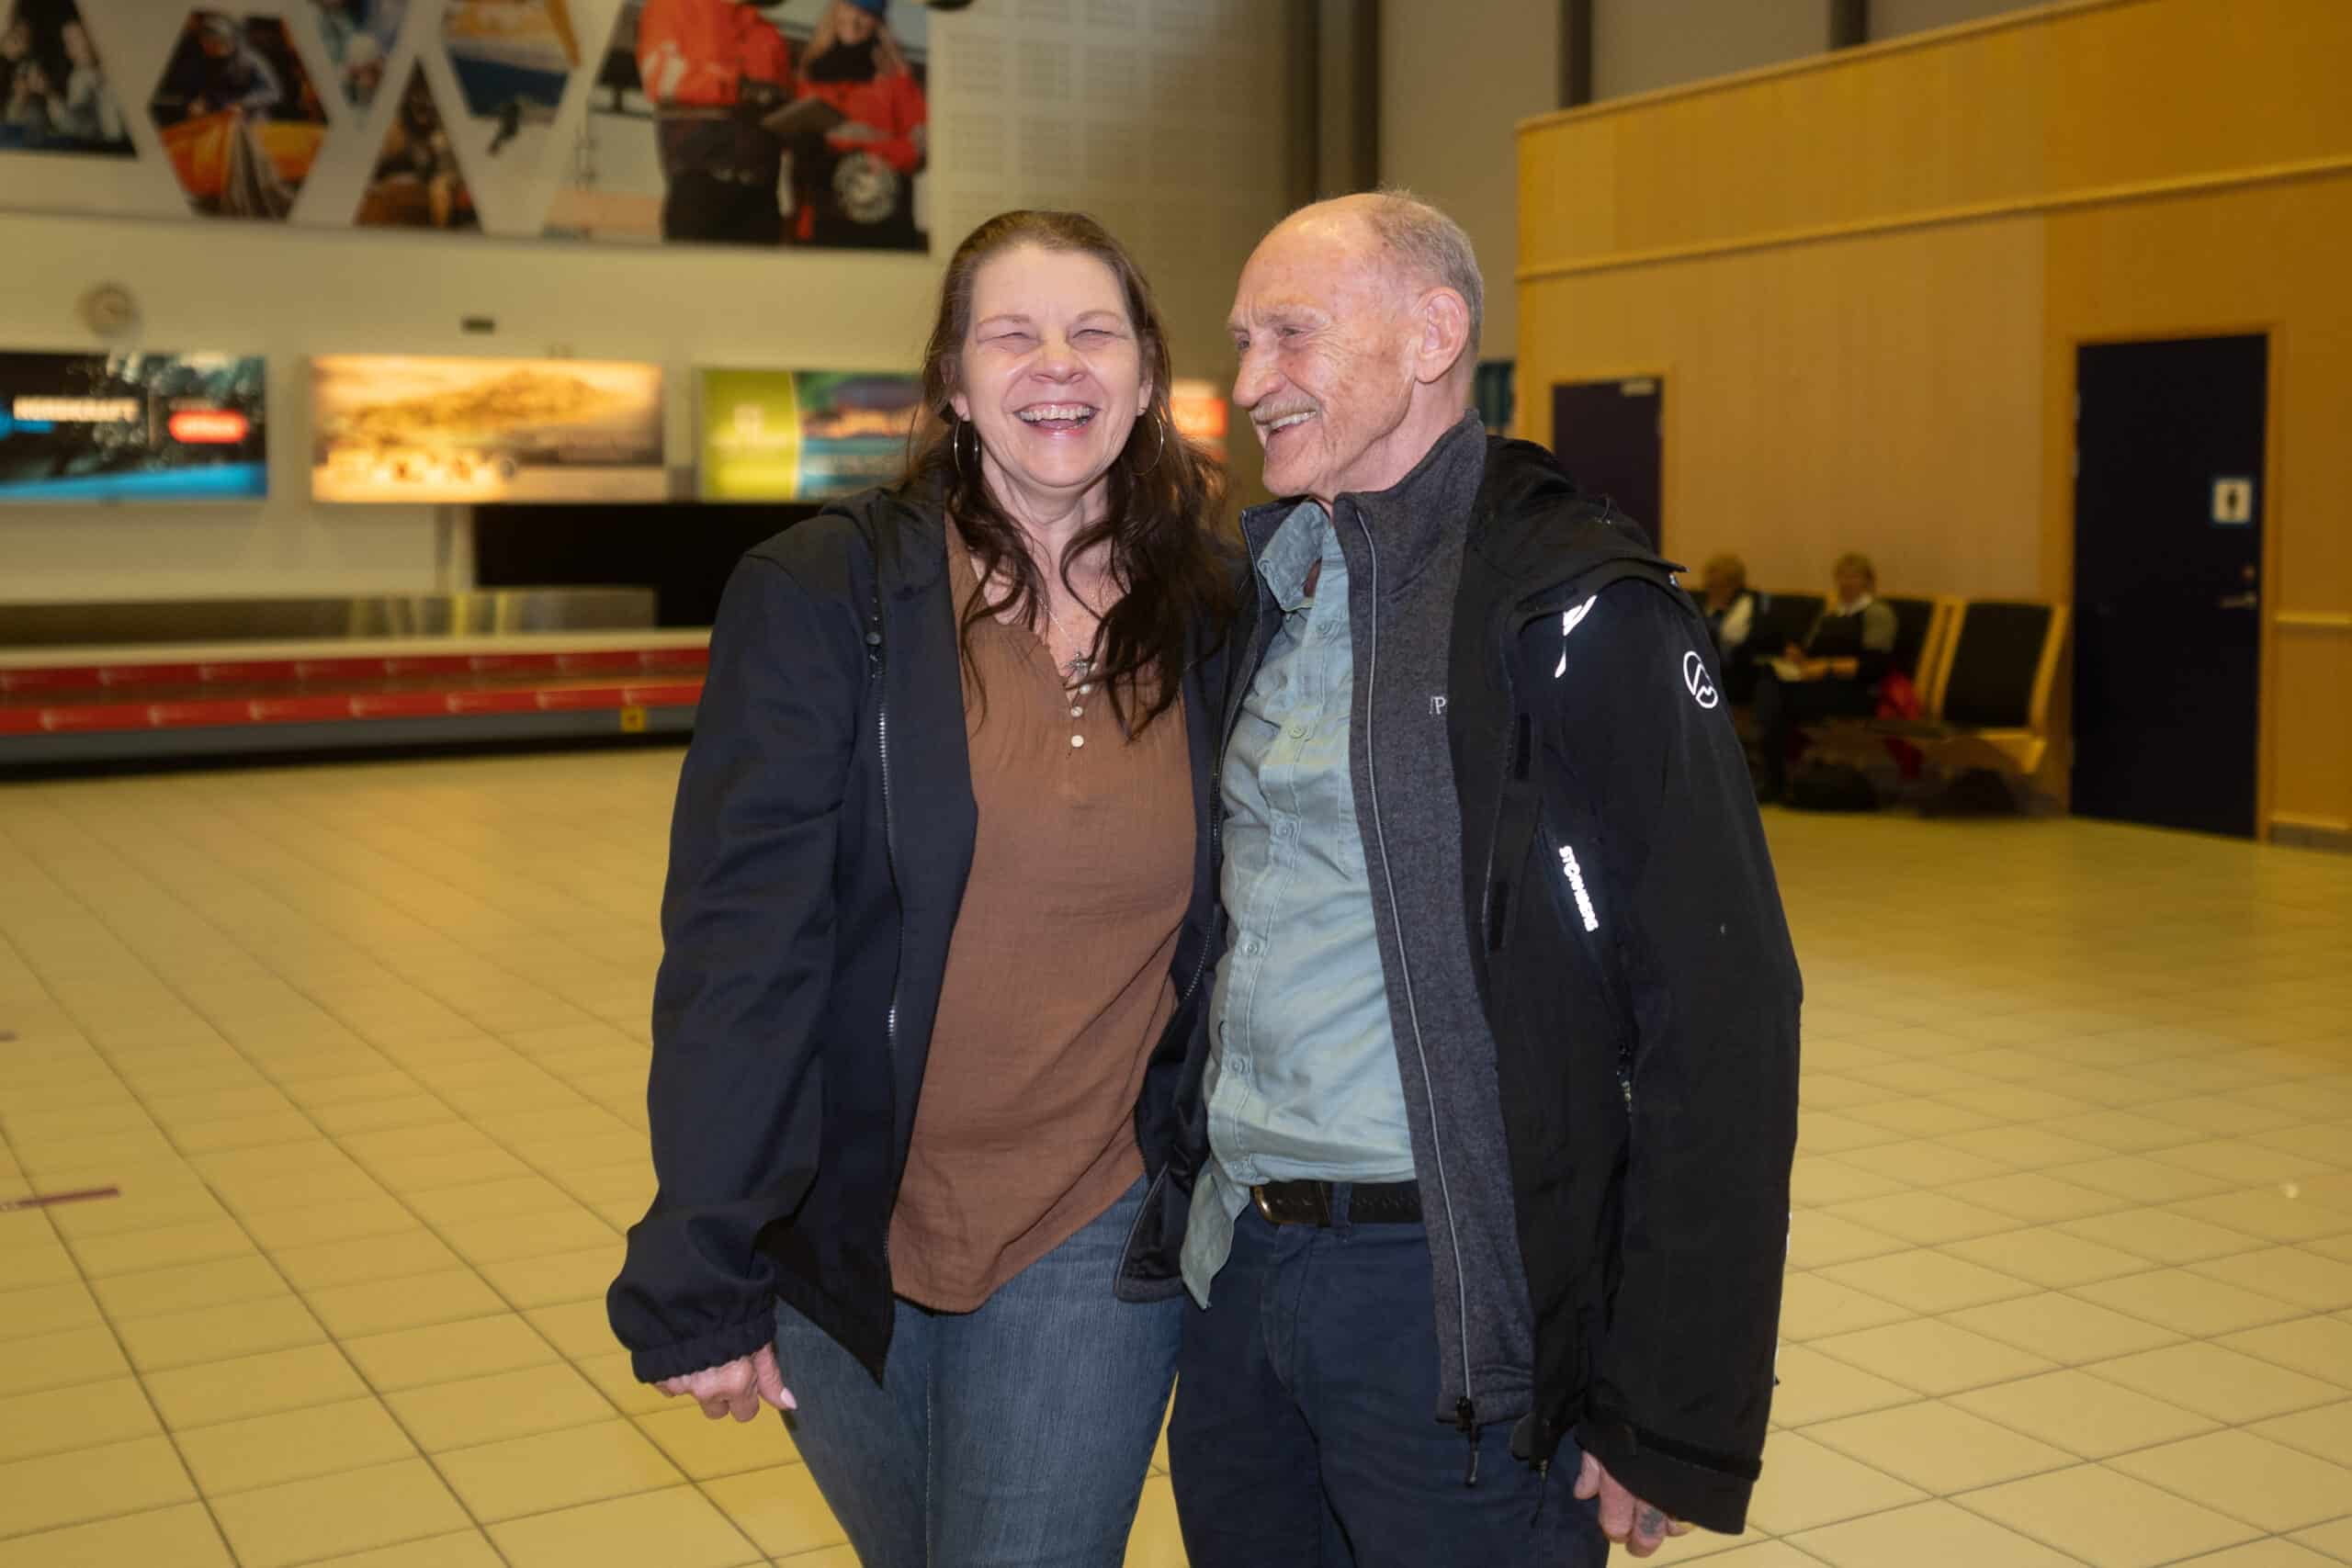 Patty med sin pappa på flygplatsen